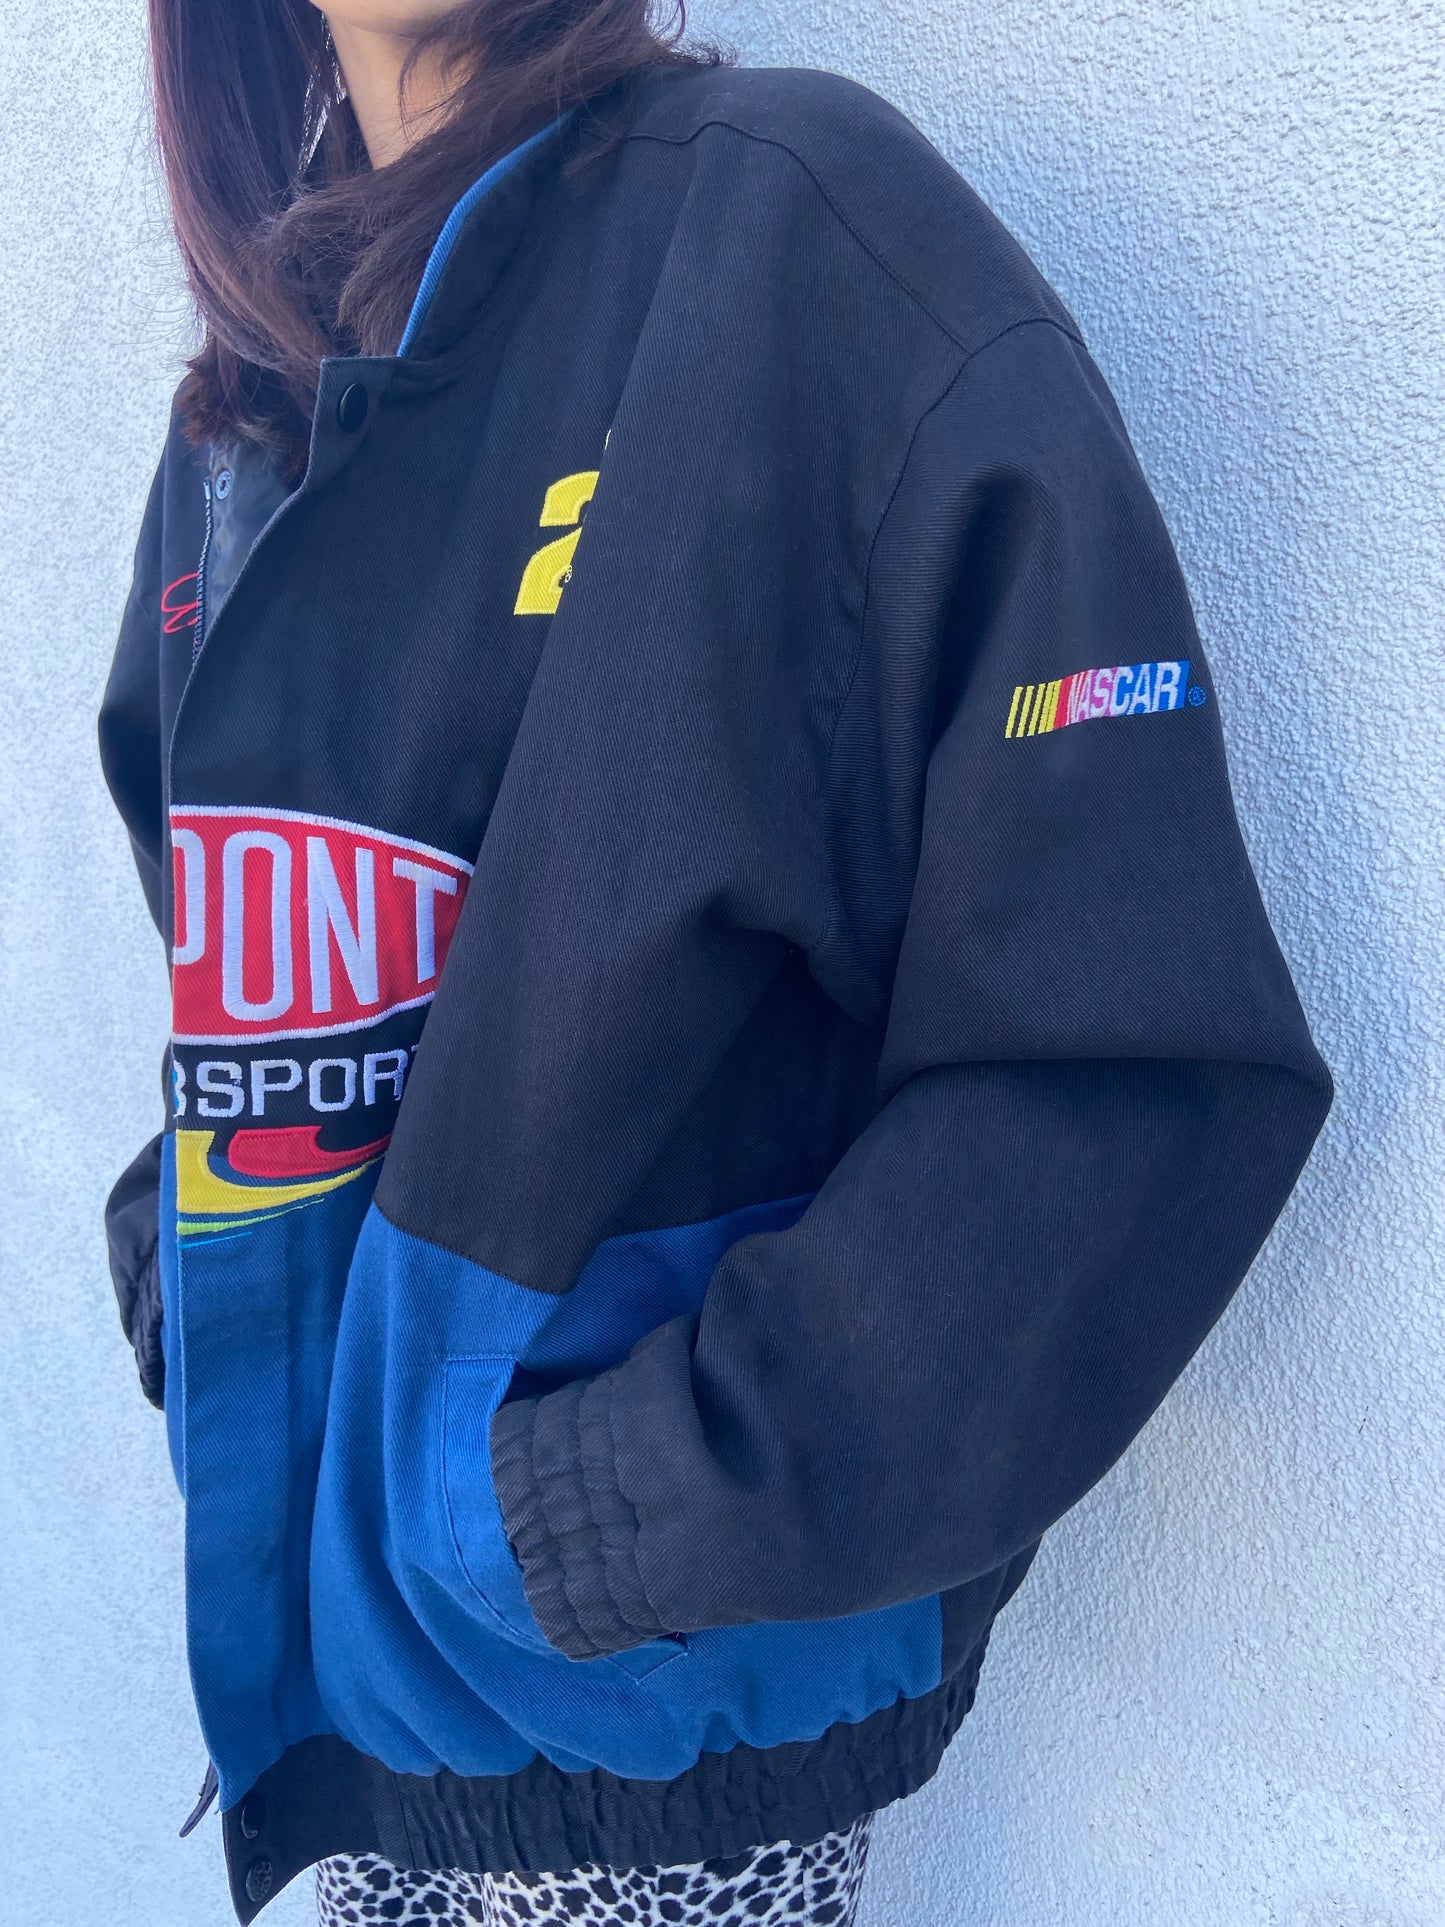 Black/Blue DuPont "24" NASCAR Jacket - M/L